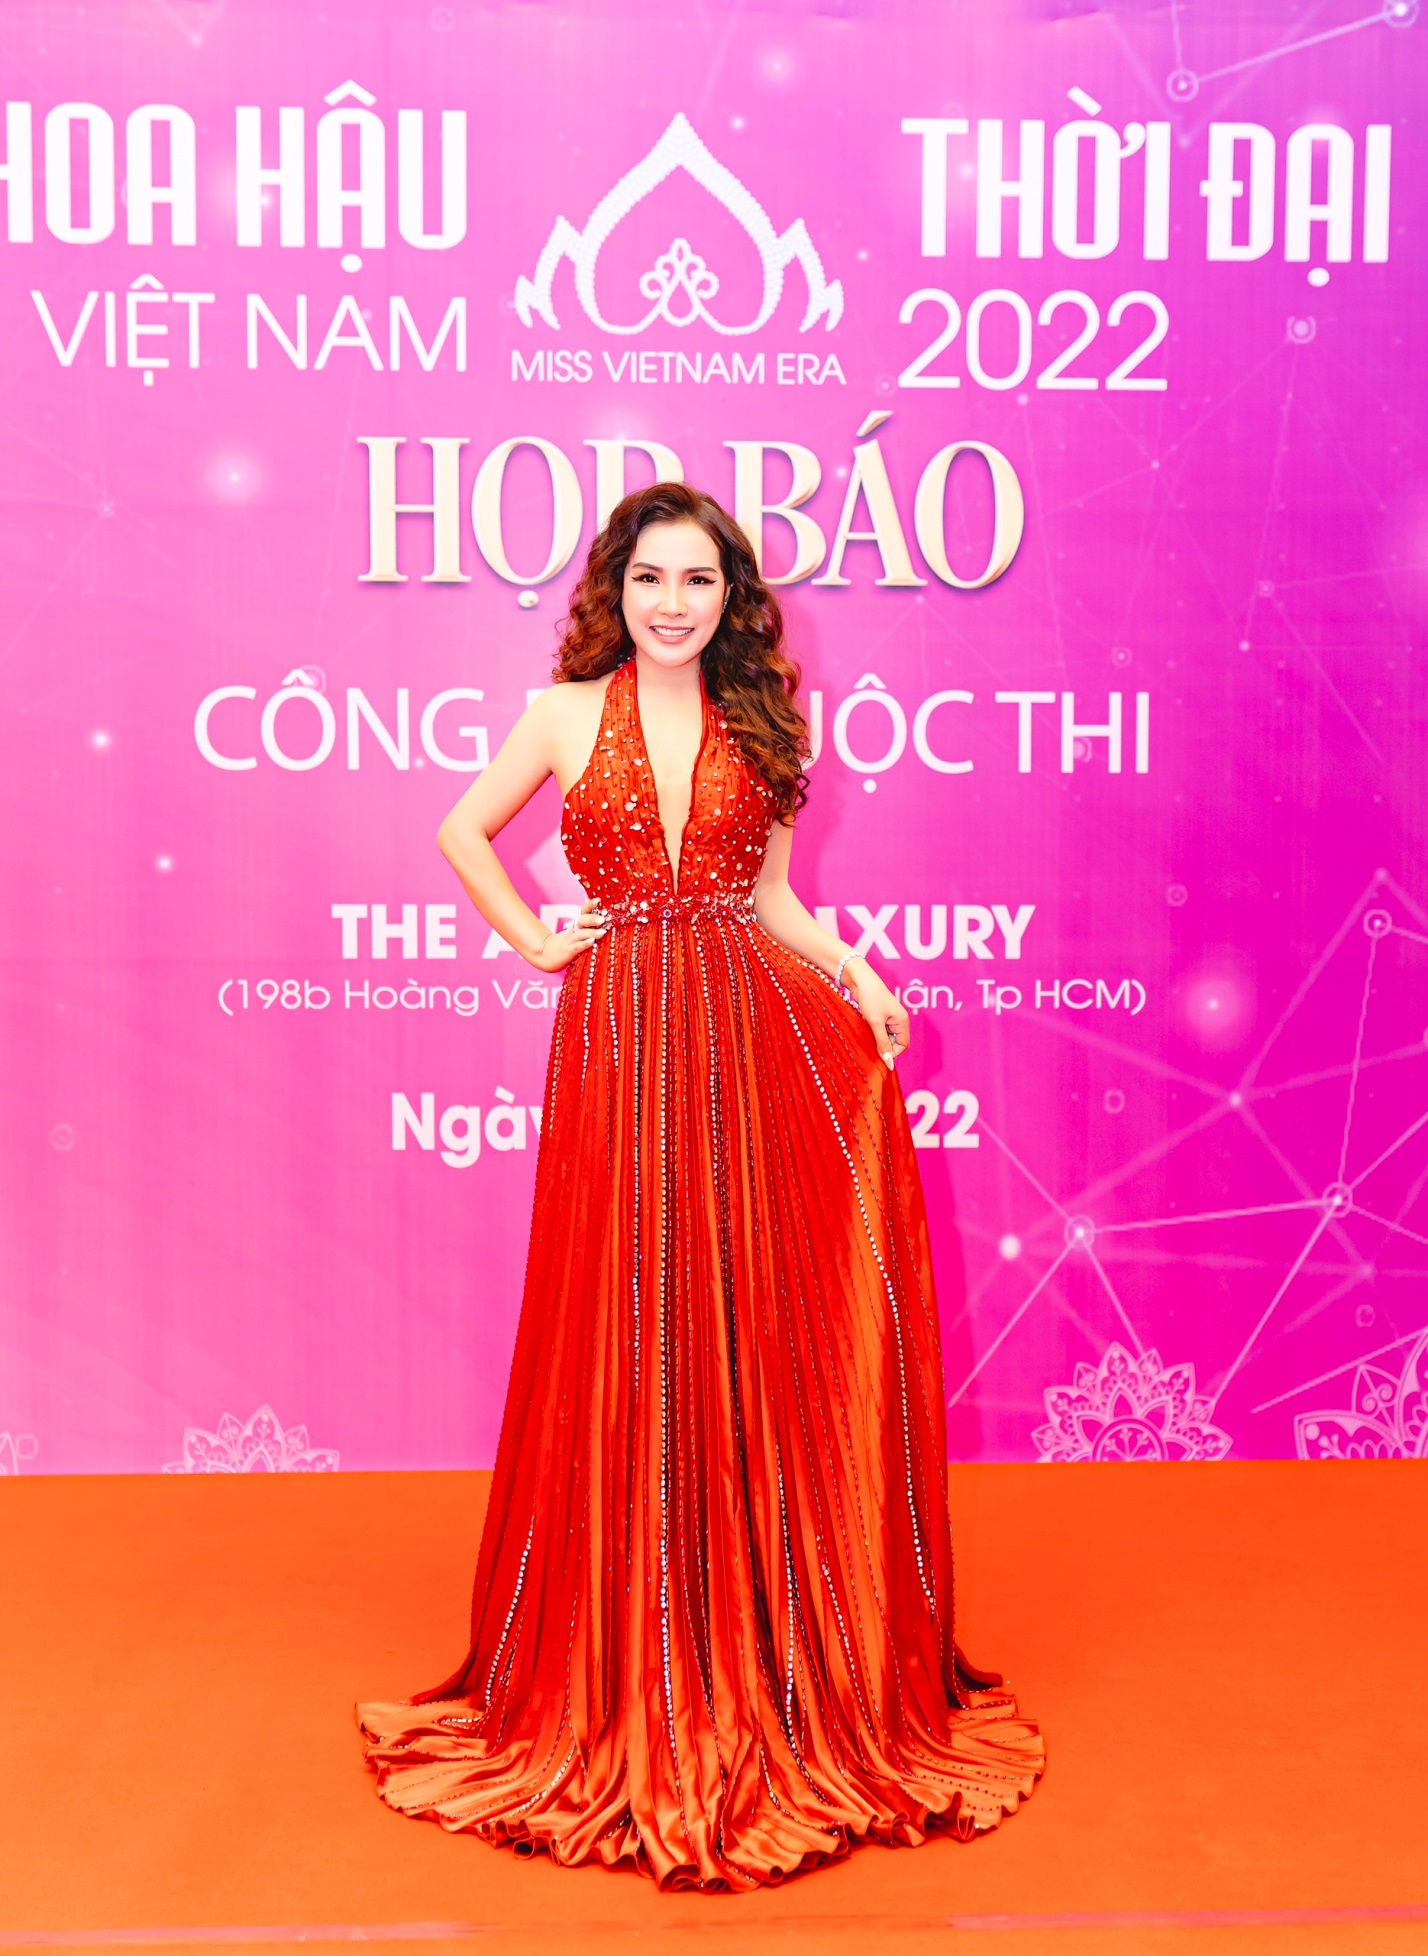 Hoa hậu Việt Nam Thời đại 2022